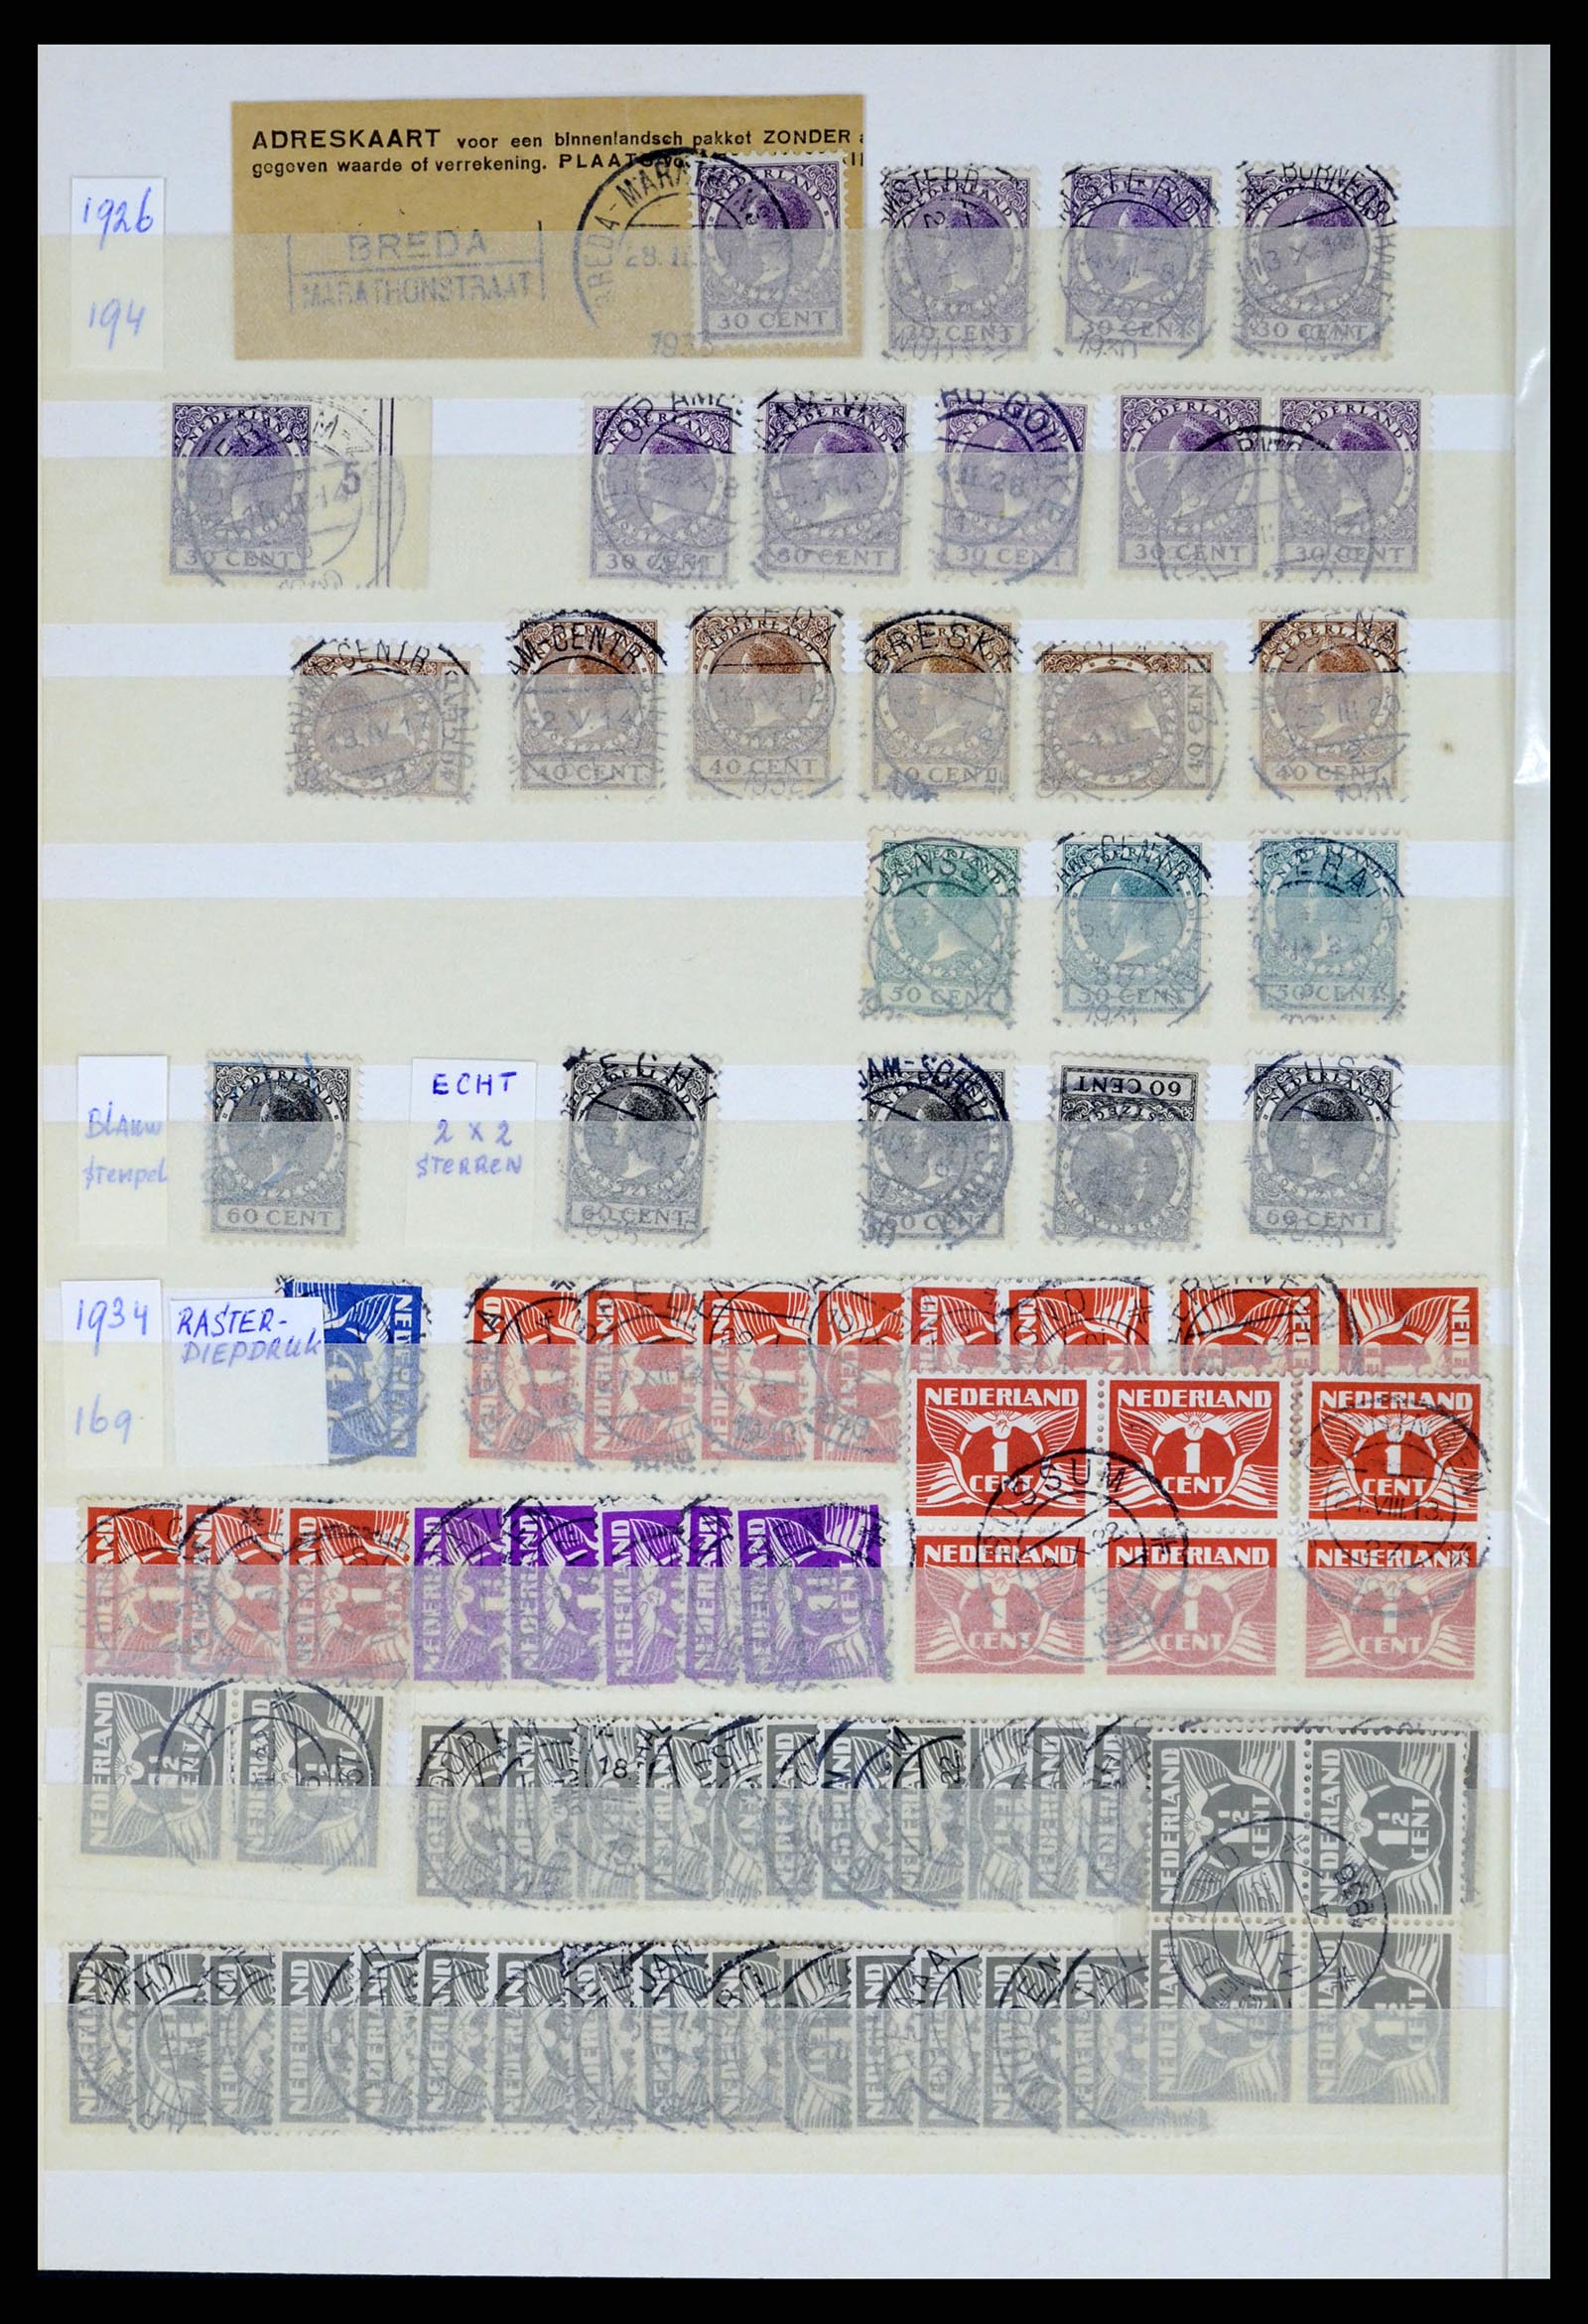 37424 008 - Postzegelverzameling 37424 Nederland kortebalk stempels.